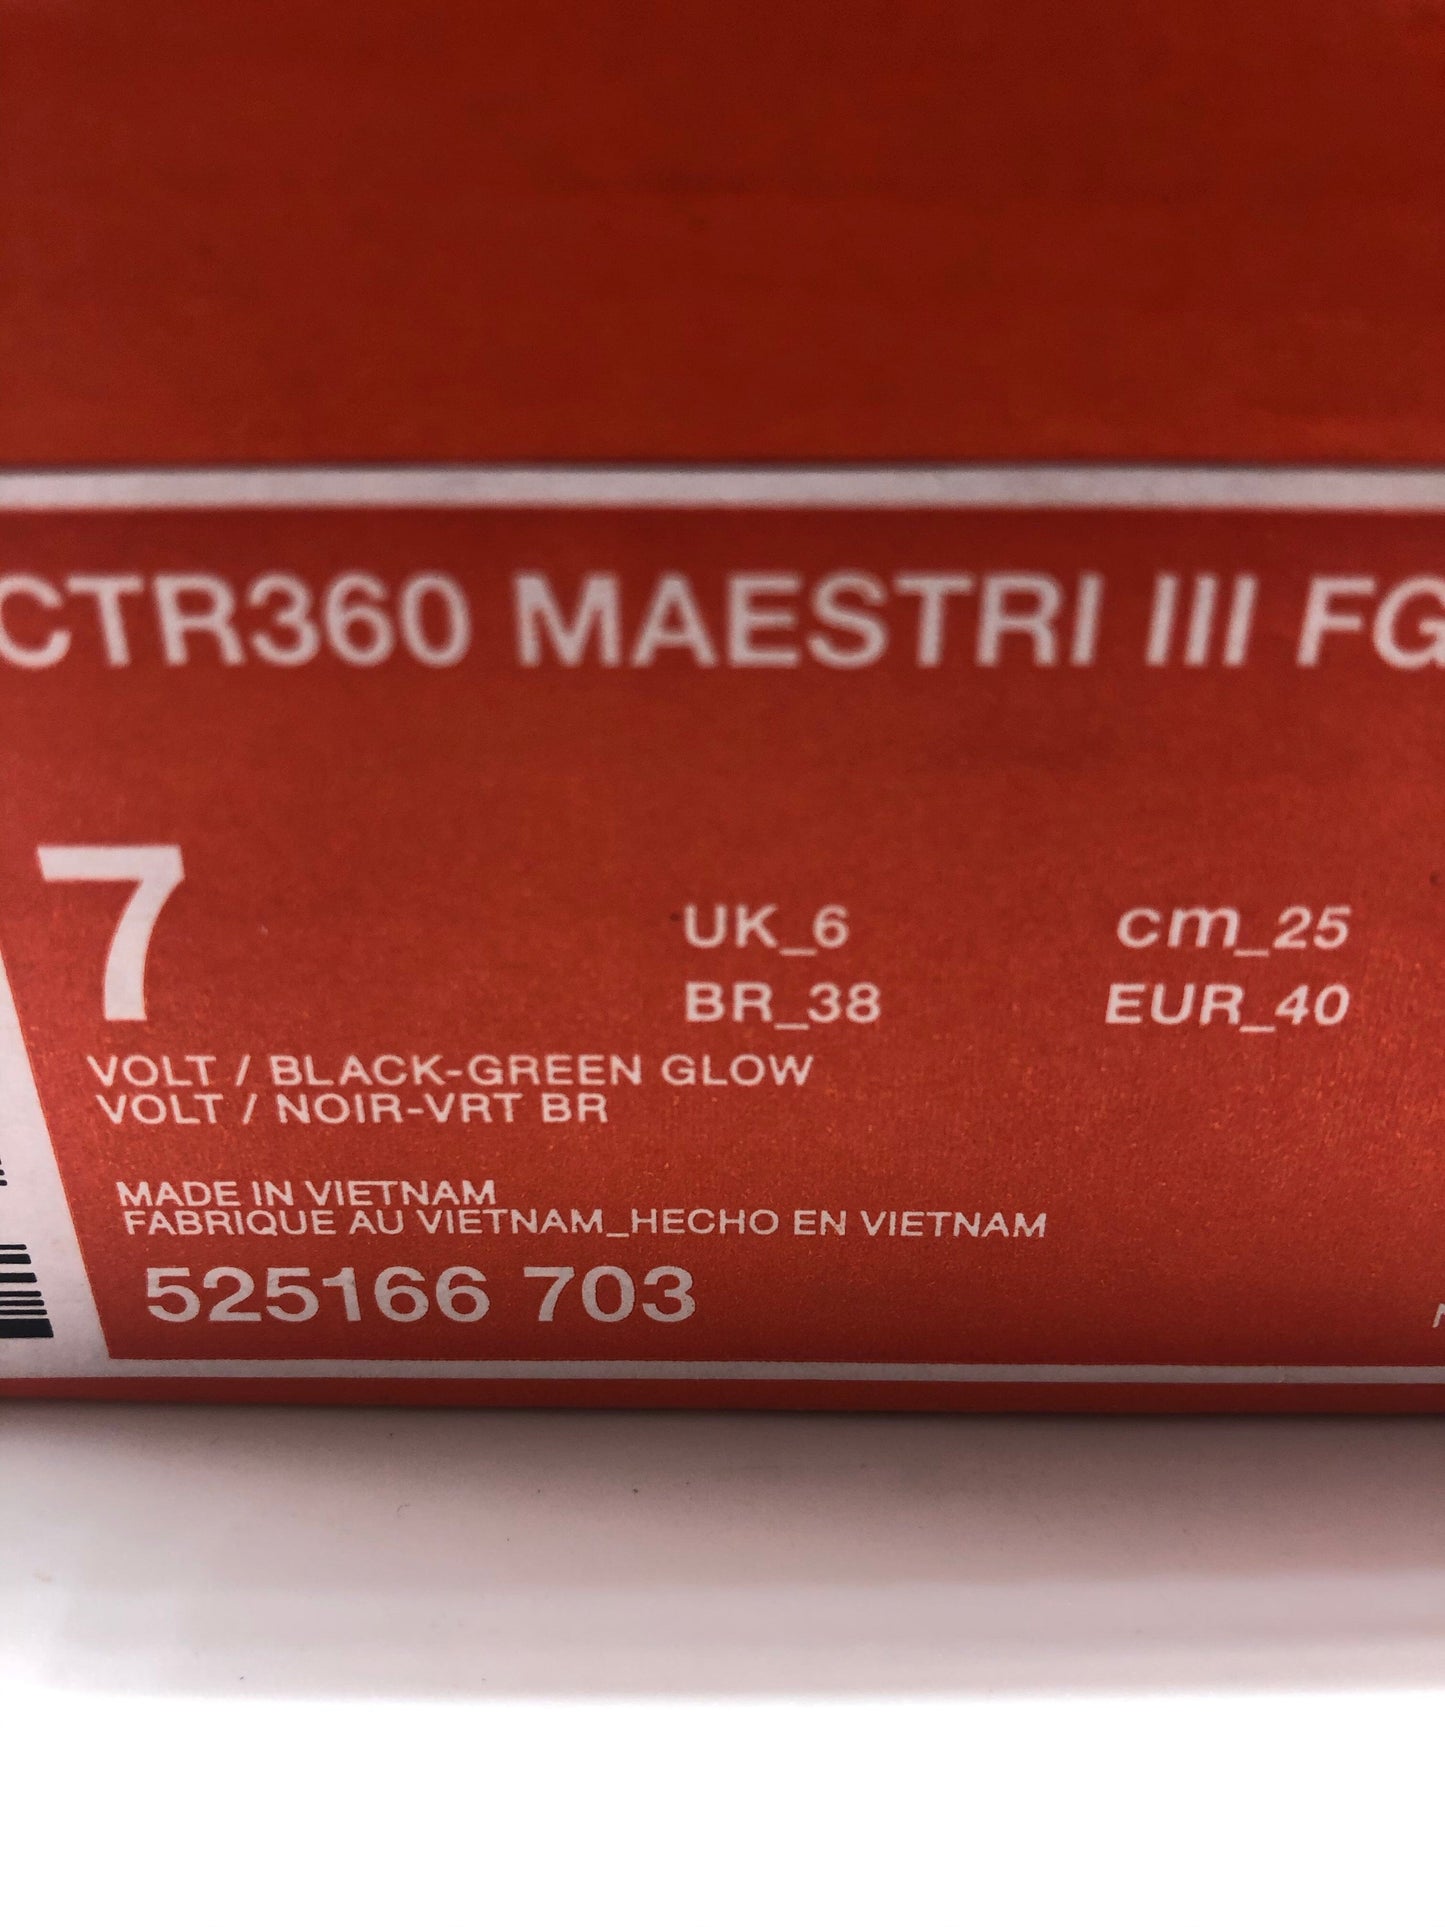 Nike CTR360 Maestri III FG